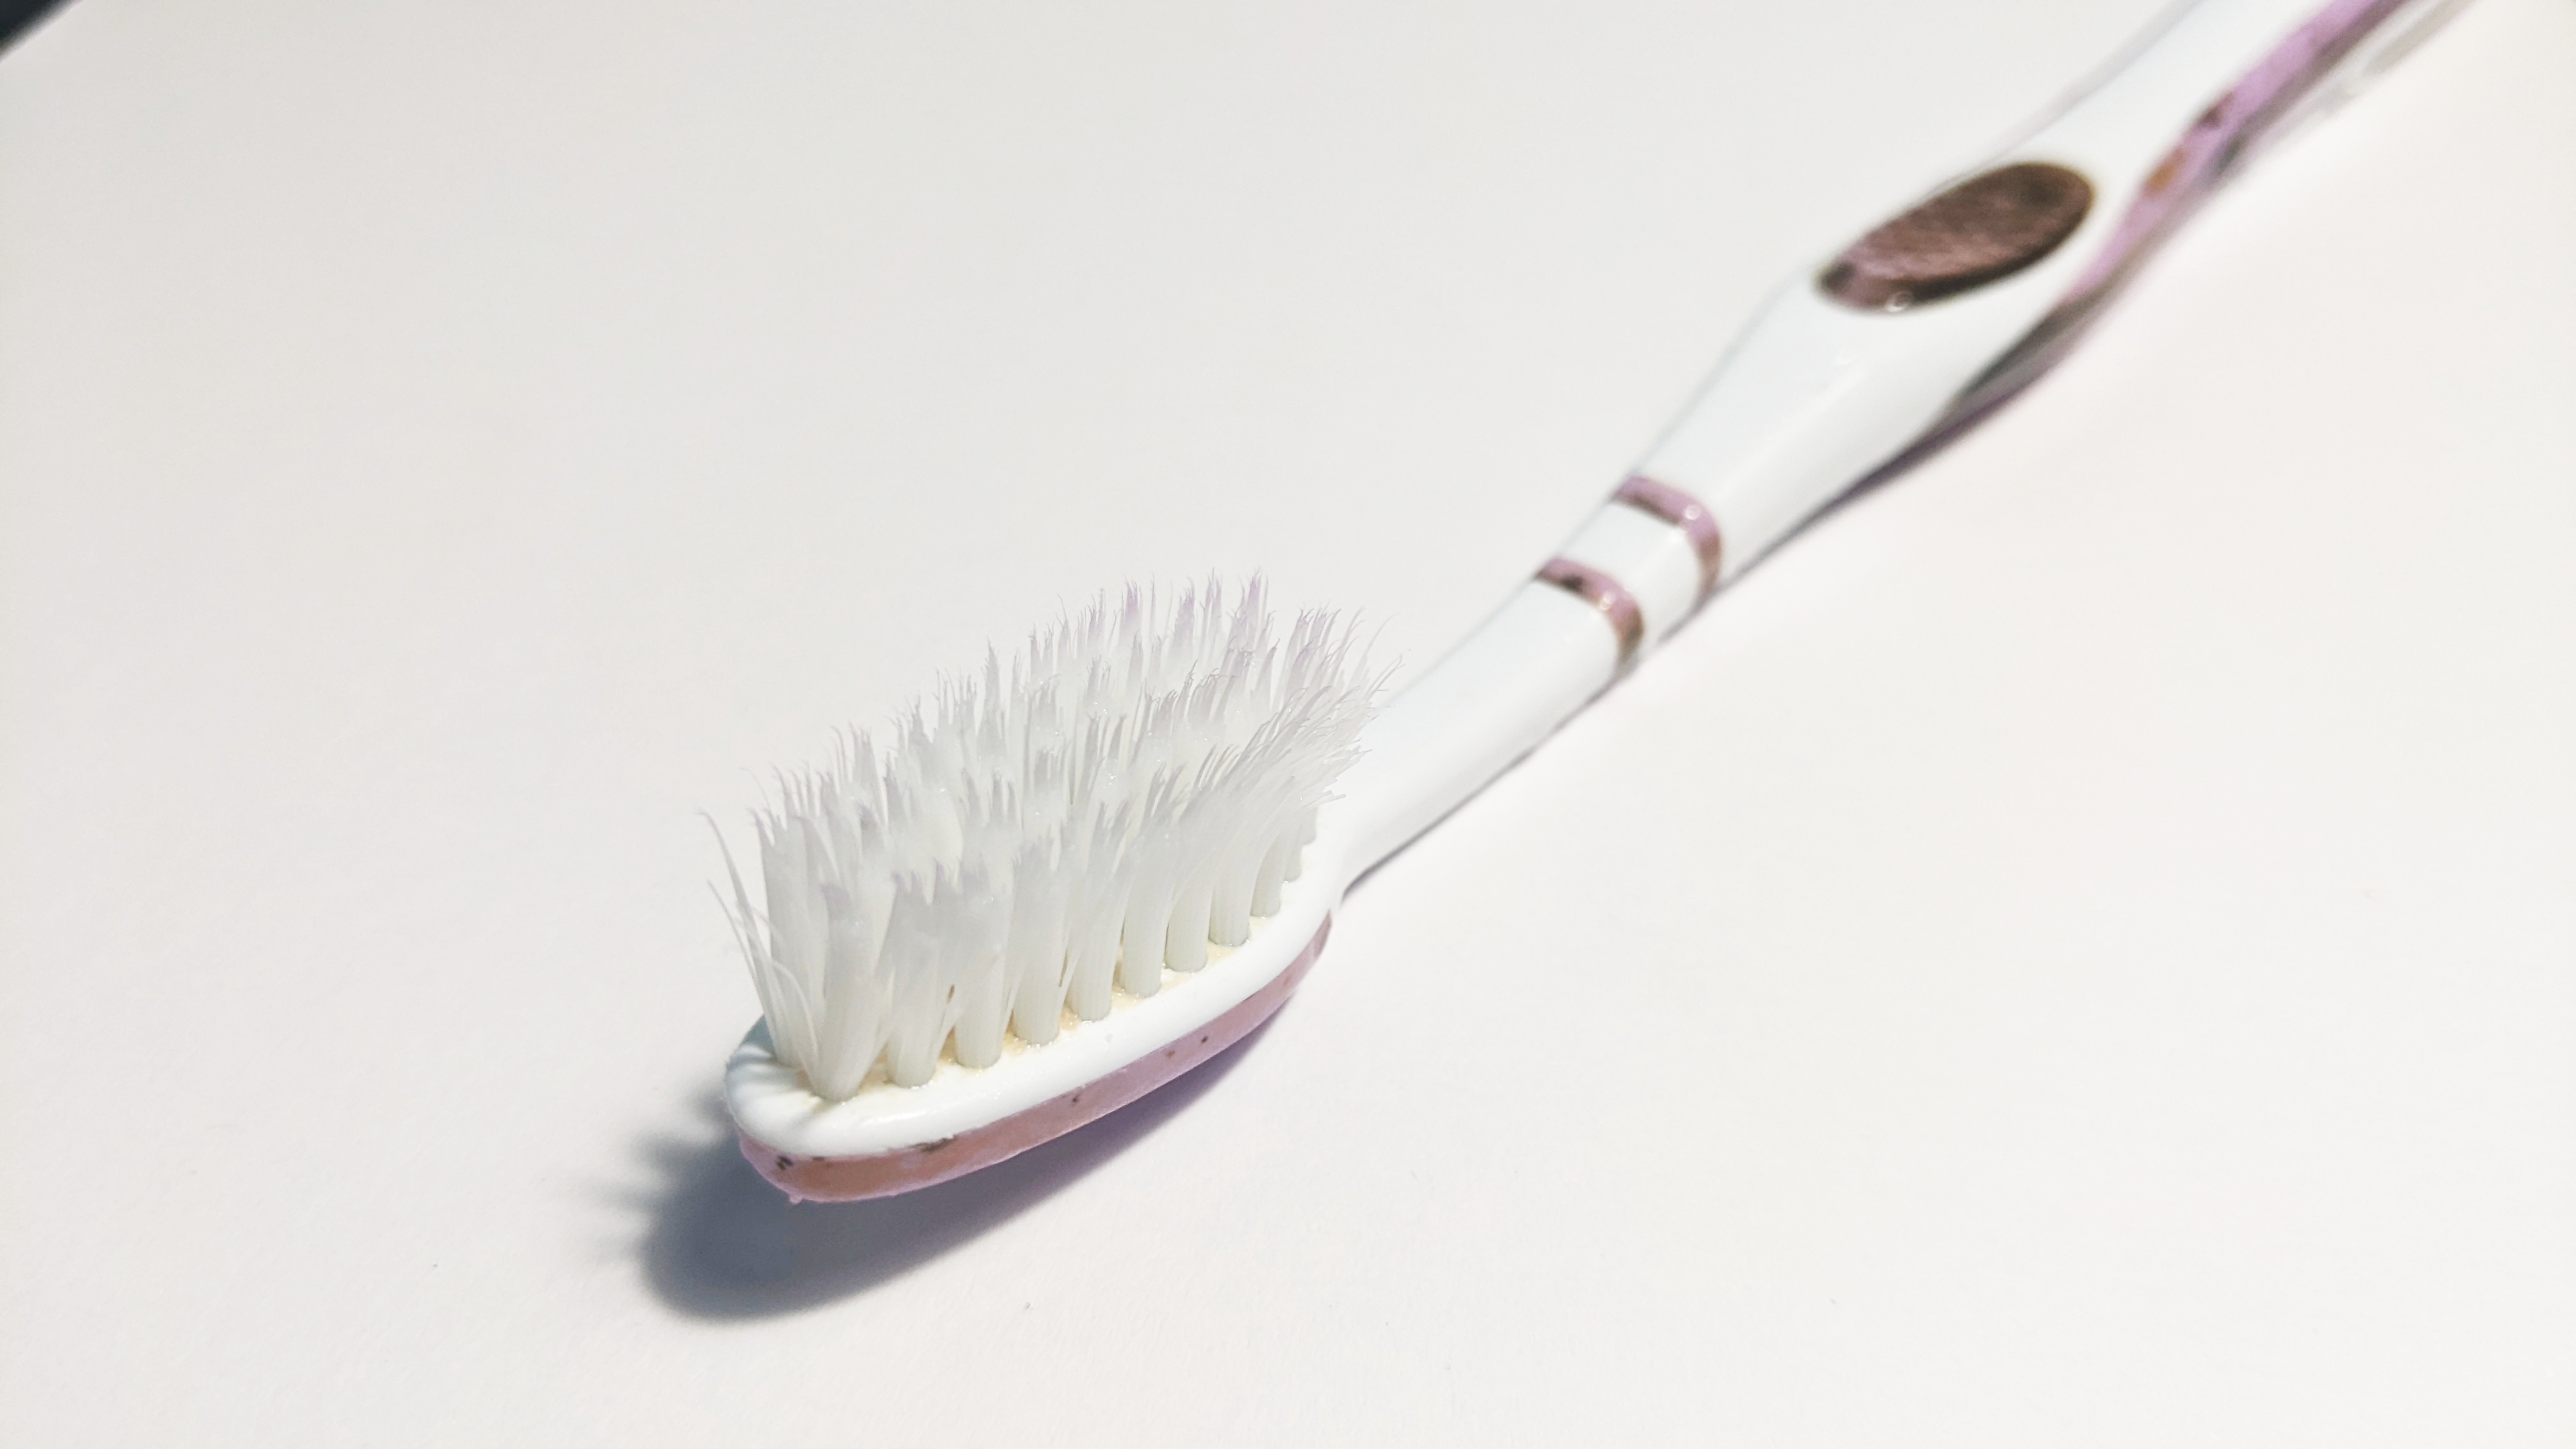 Jason a obligé sa fille à se brosser les dents avec une brosse à dents sale. | Source : Shutterstock